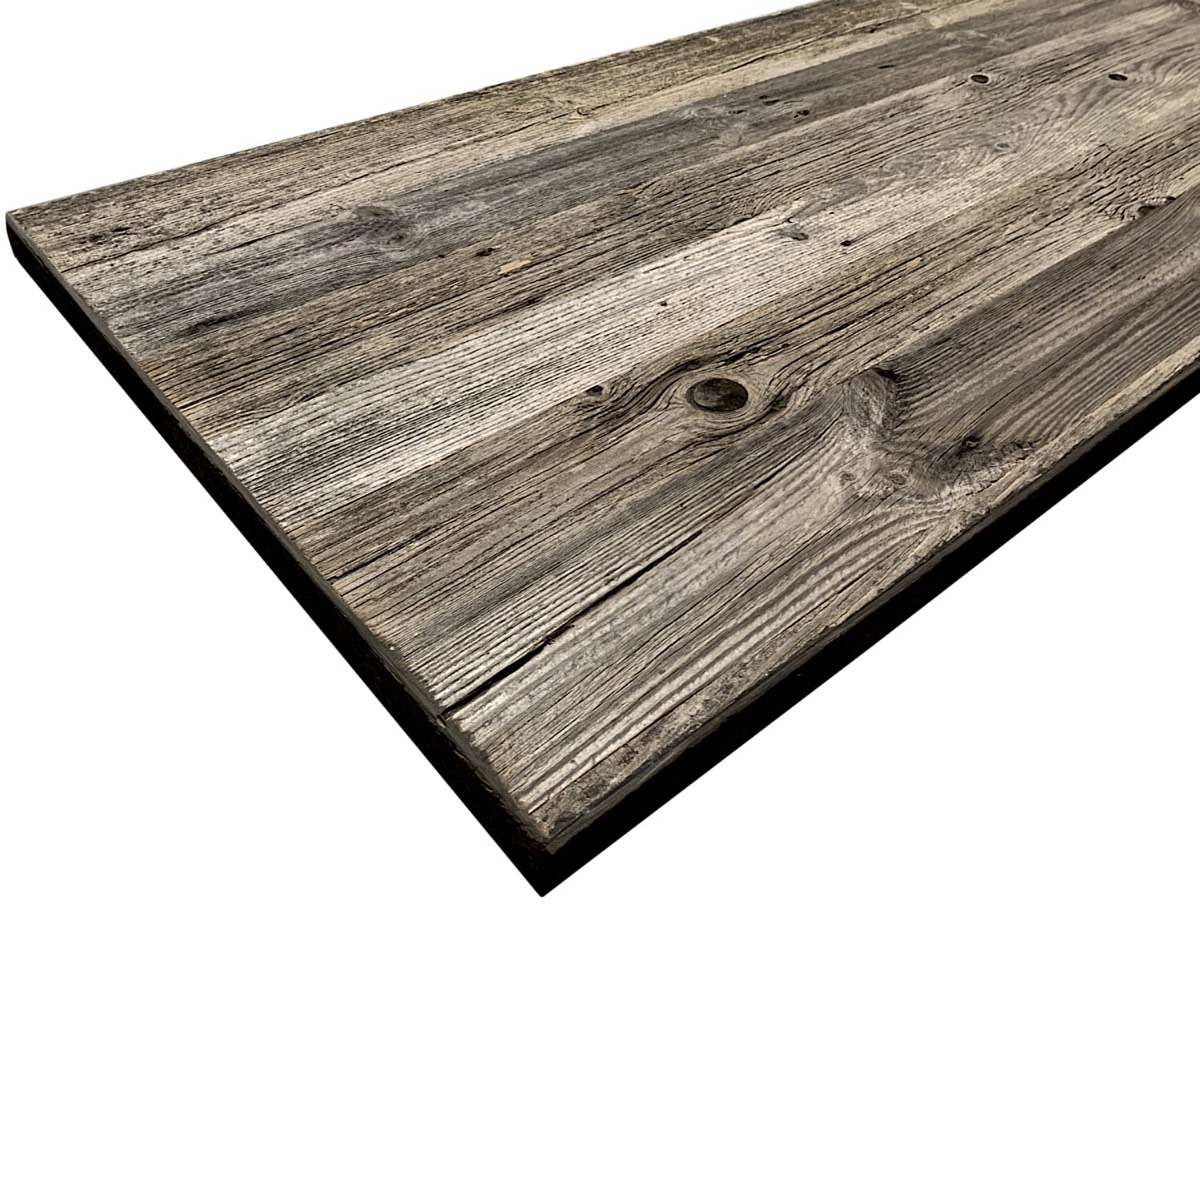 table en bois ancien gris, table vieux bois gris, plateau bois ancien gris, plateau bois rustique, table de ferme